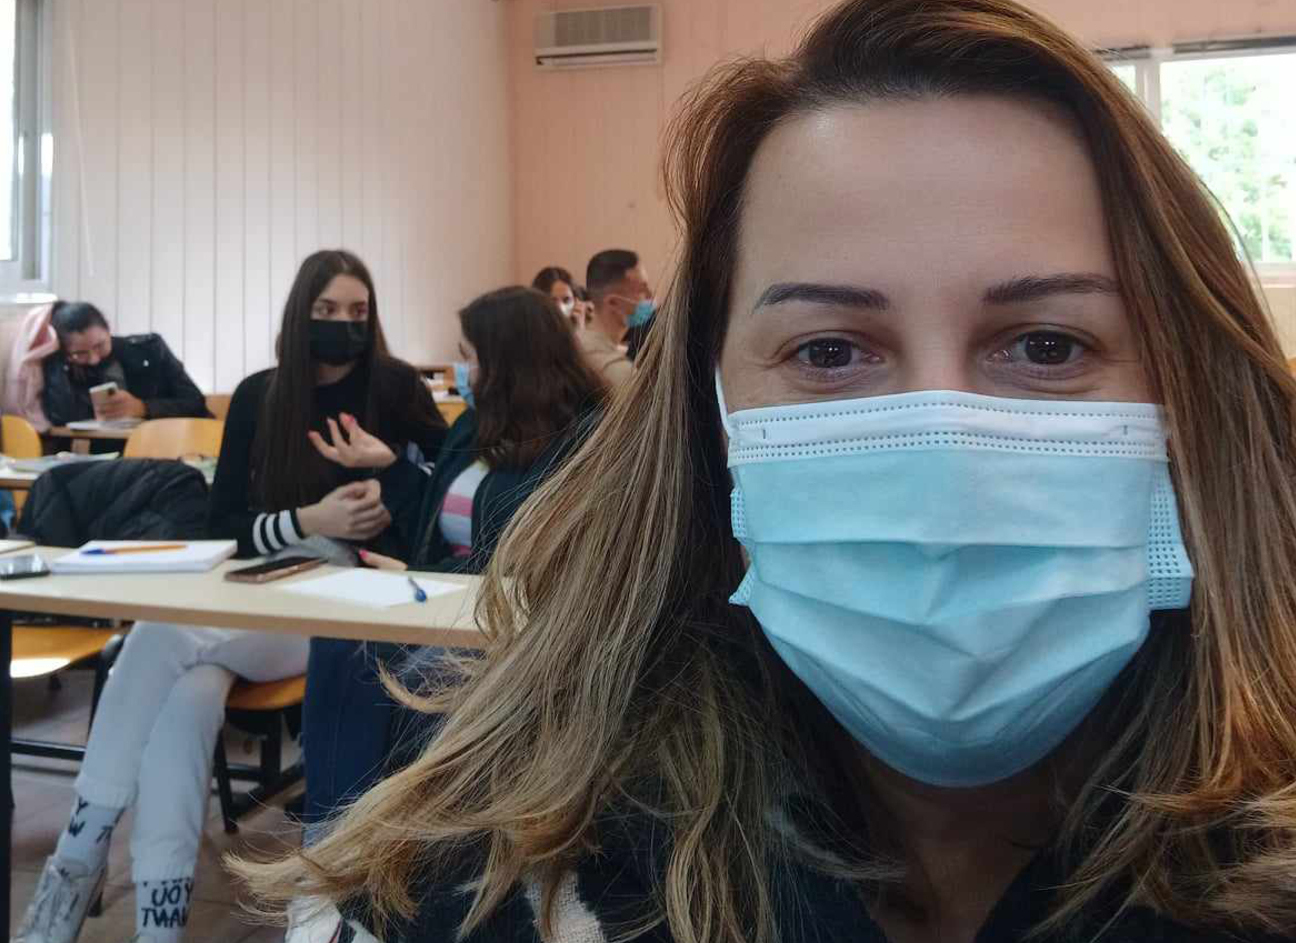 Θεσσαλονίκη: Μητέρα 3 παιδιών με χαλαρή παραπληγία πήρε πτυχίο από το ΑΠΘ